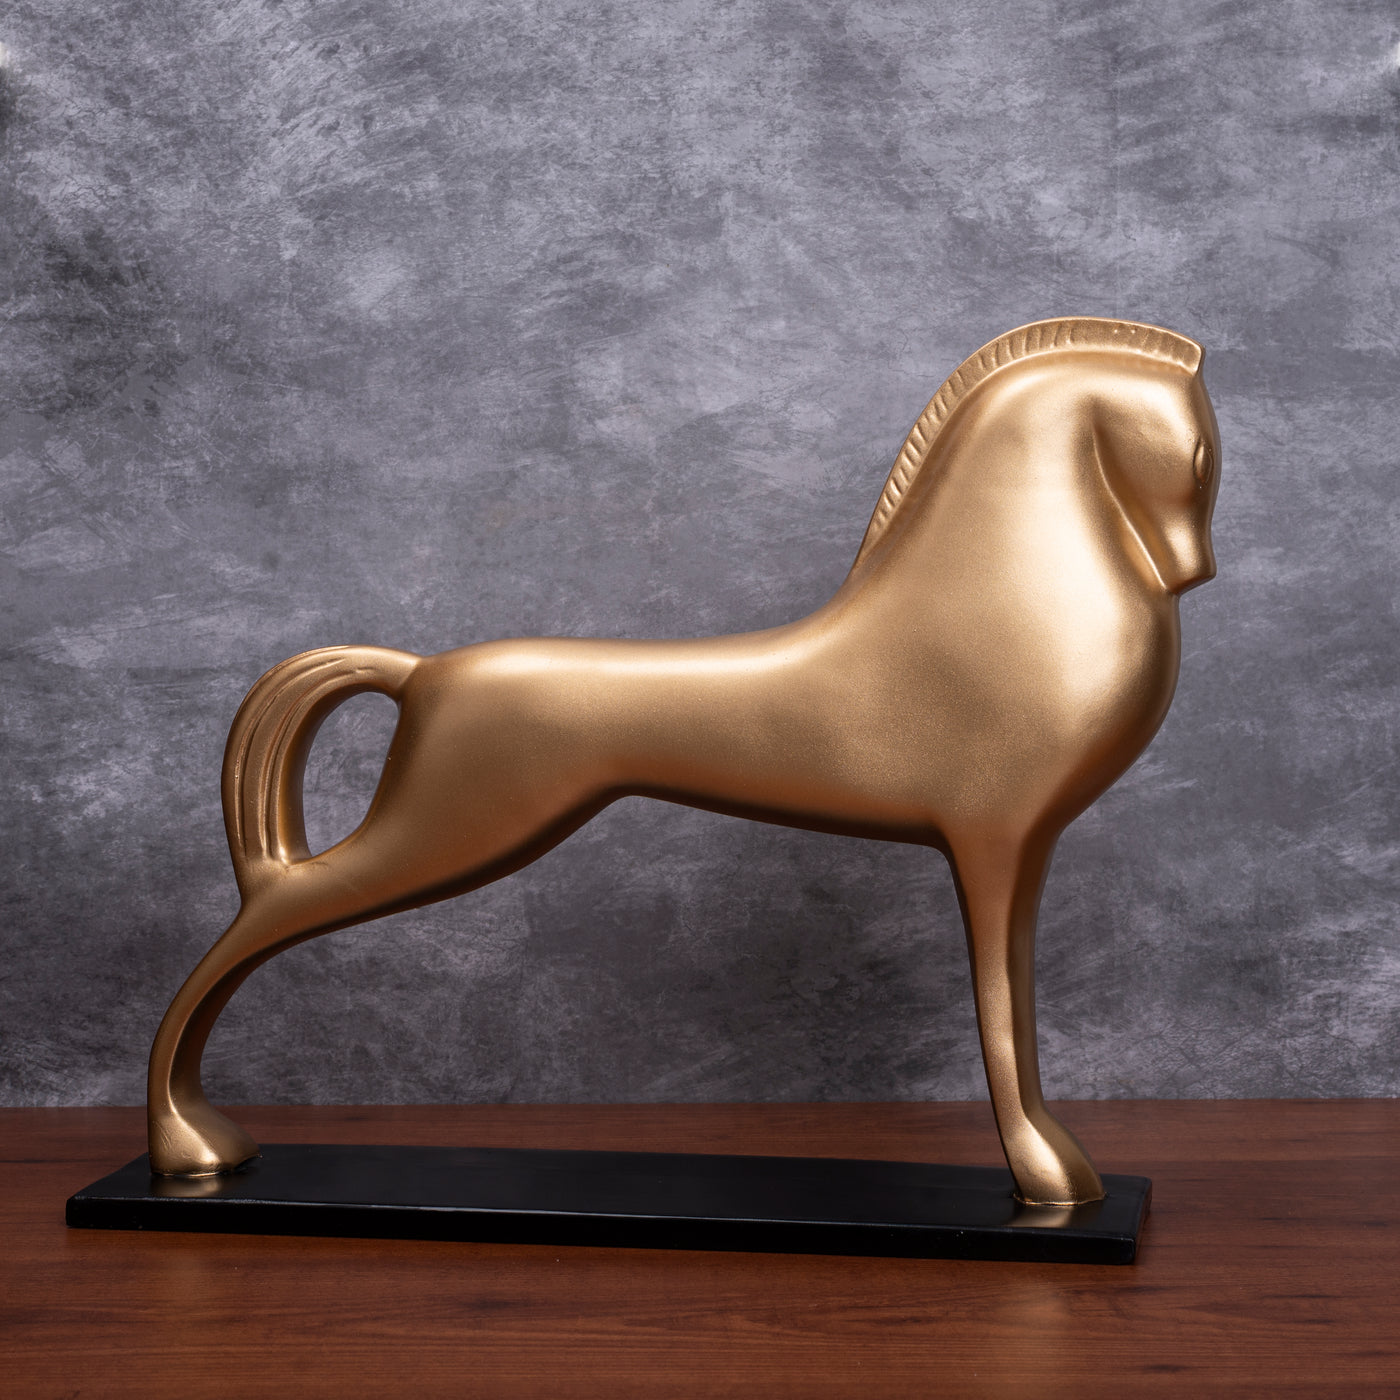 The Assyrian Horse Golden